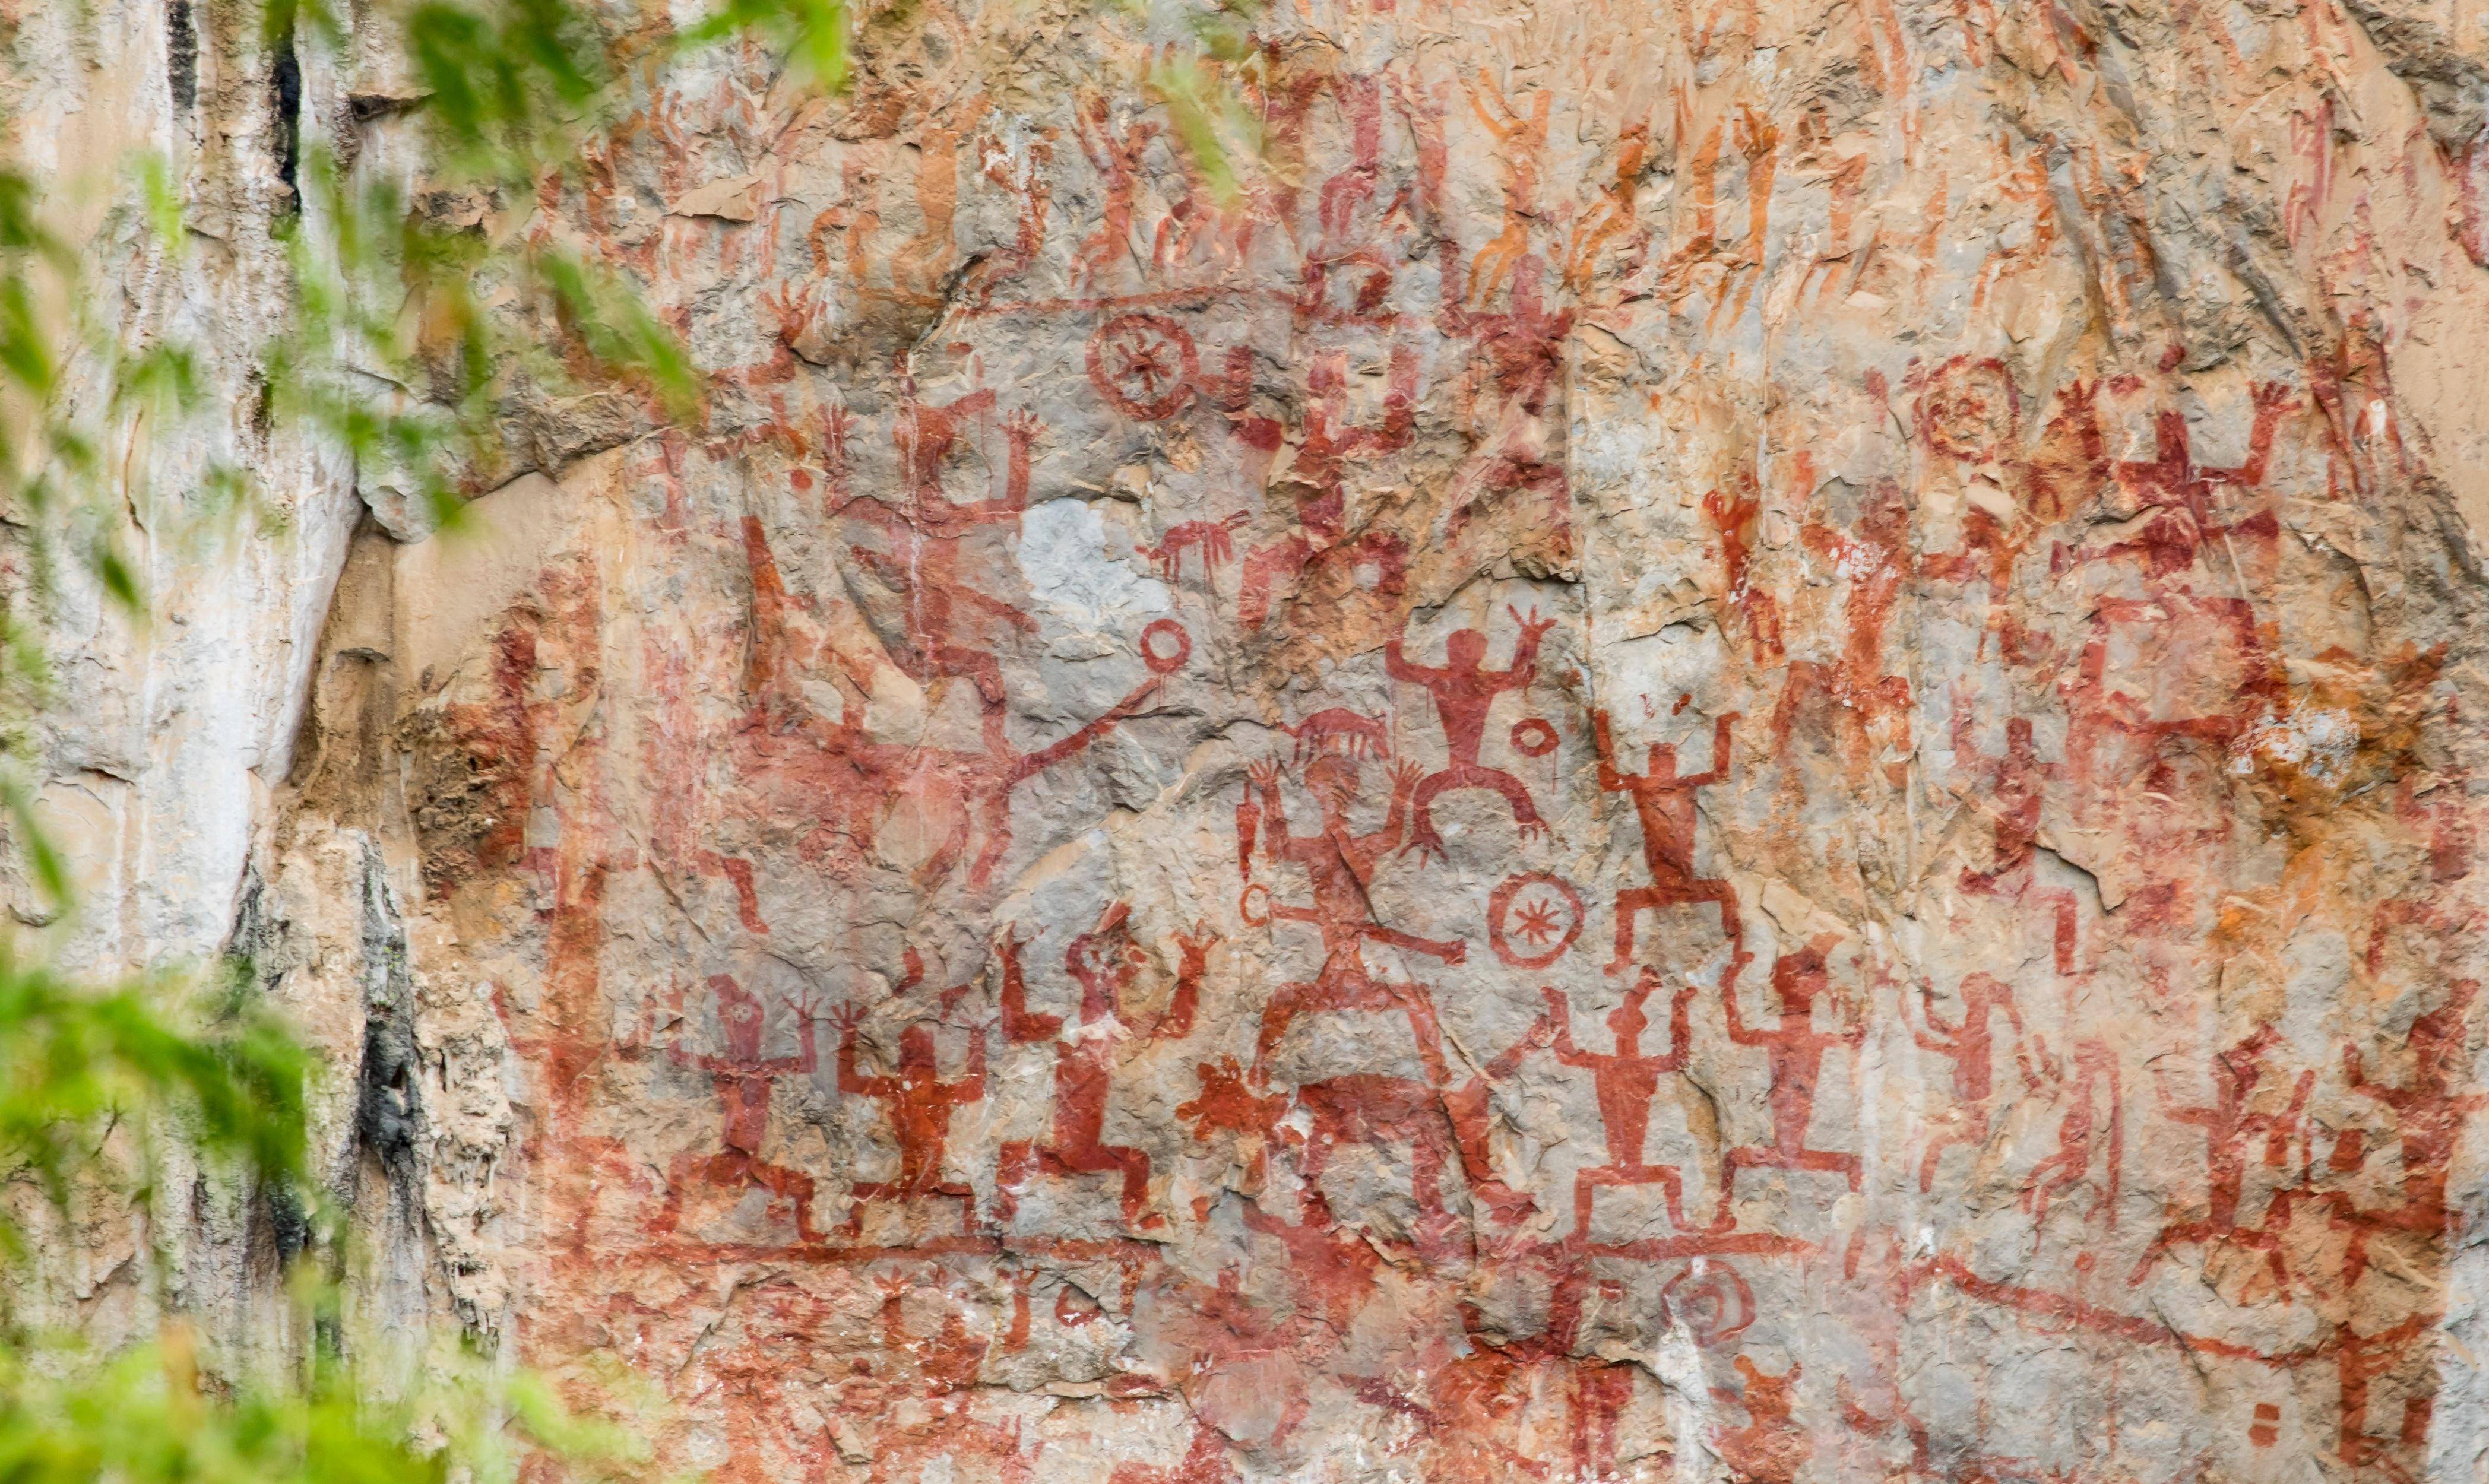 广西花山岩画之谜,揭秘两千年前的神秘天书,专家:悬崖上的敦煌